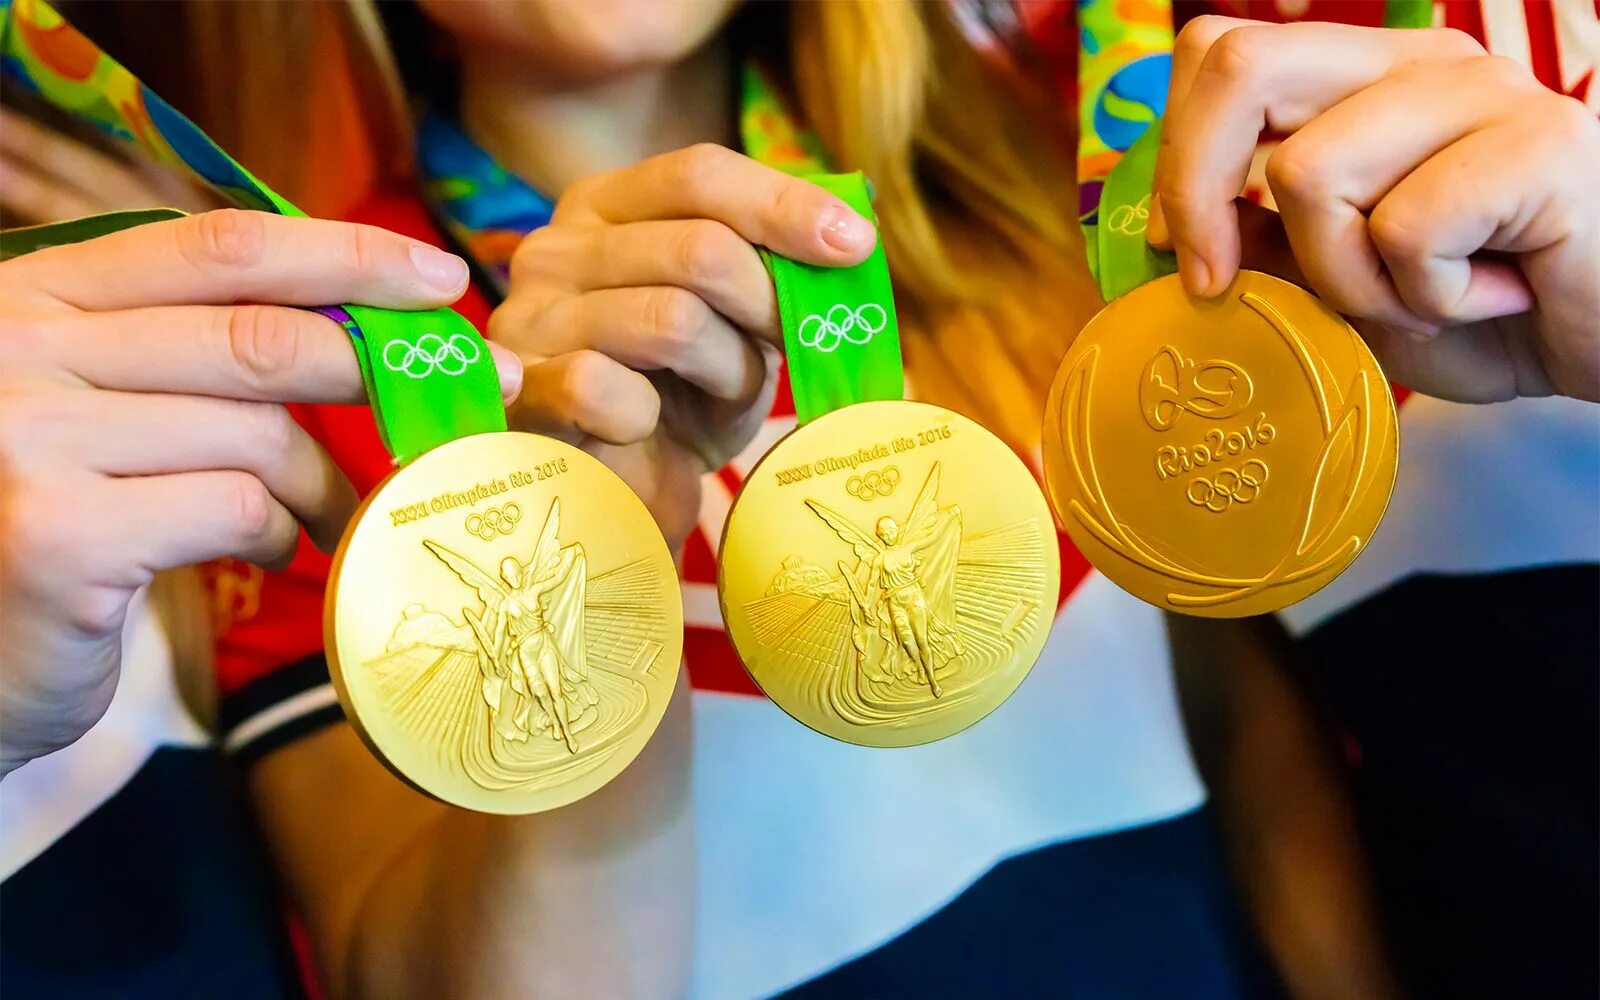 The most medals. Олимпийская медаль Рио де Жанейро. Олимпийские медали Рио де Жанейро 2016. Золотая медаль Рио 2016. Олимпийское золото.